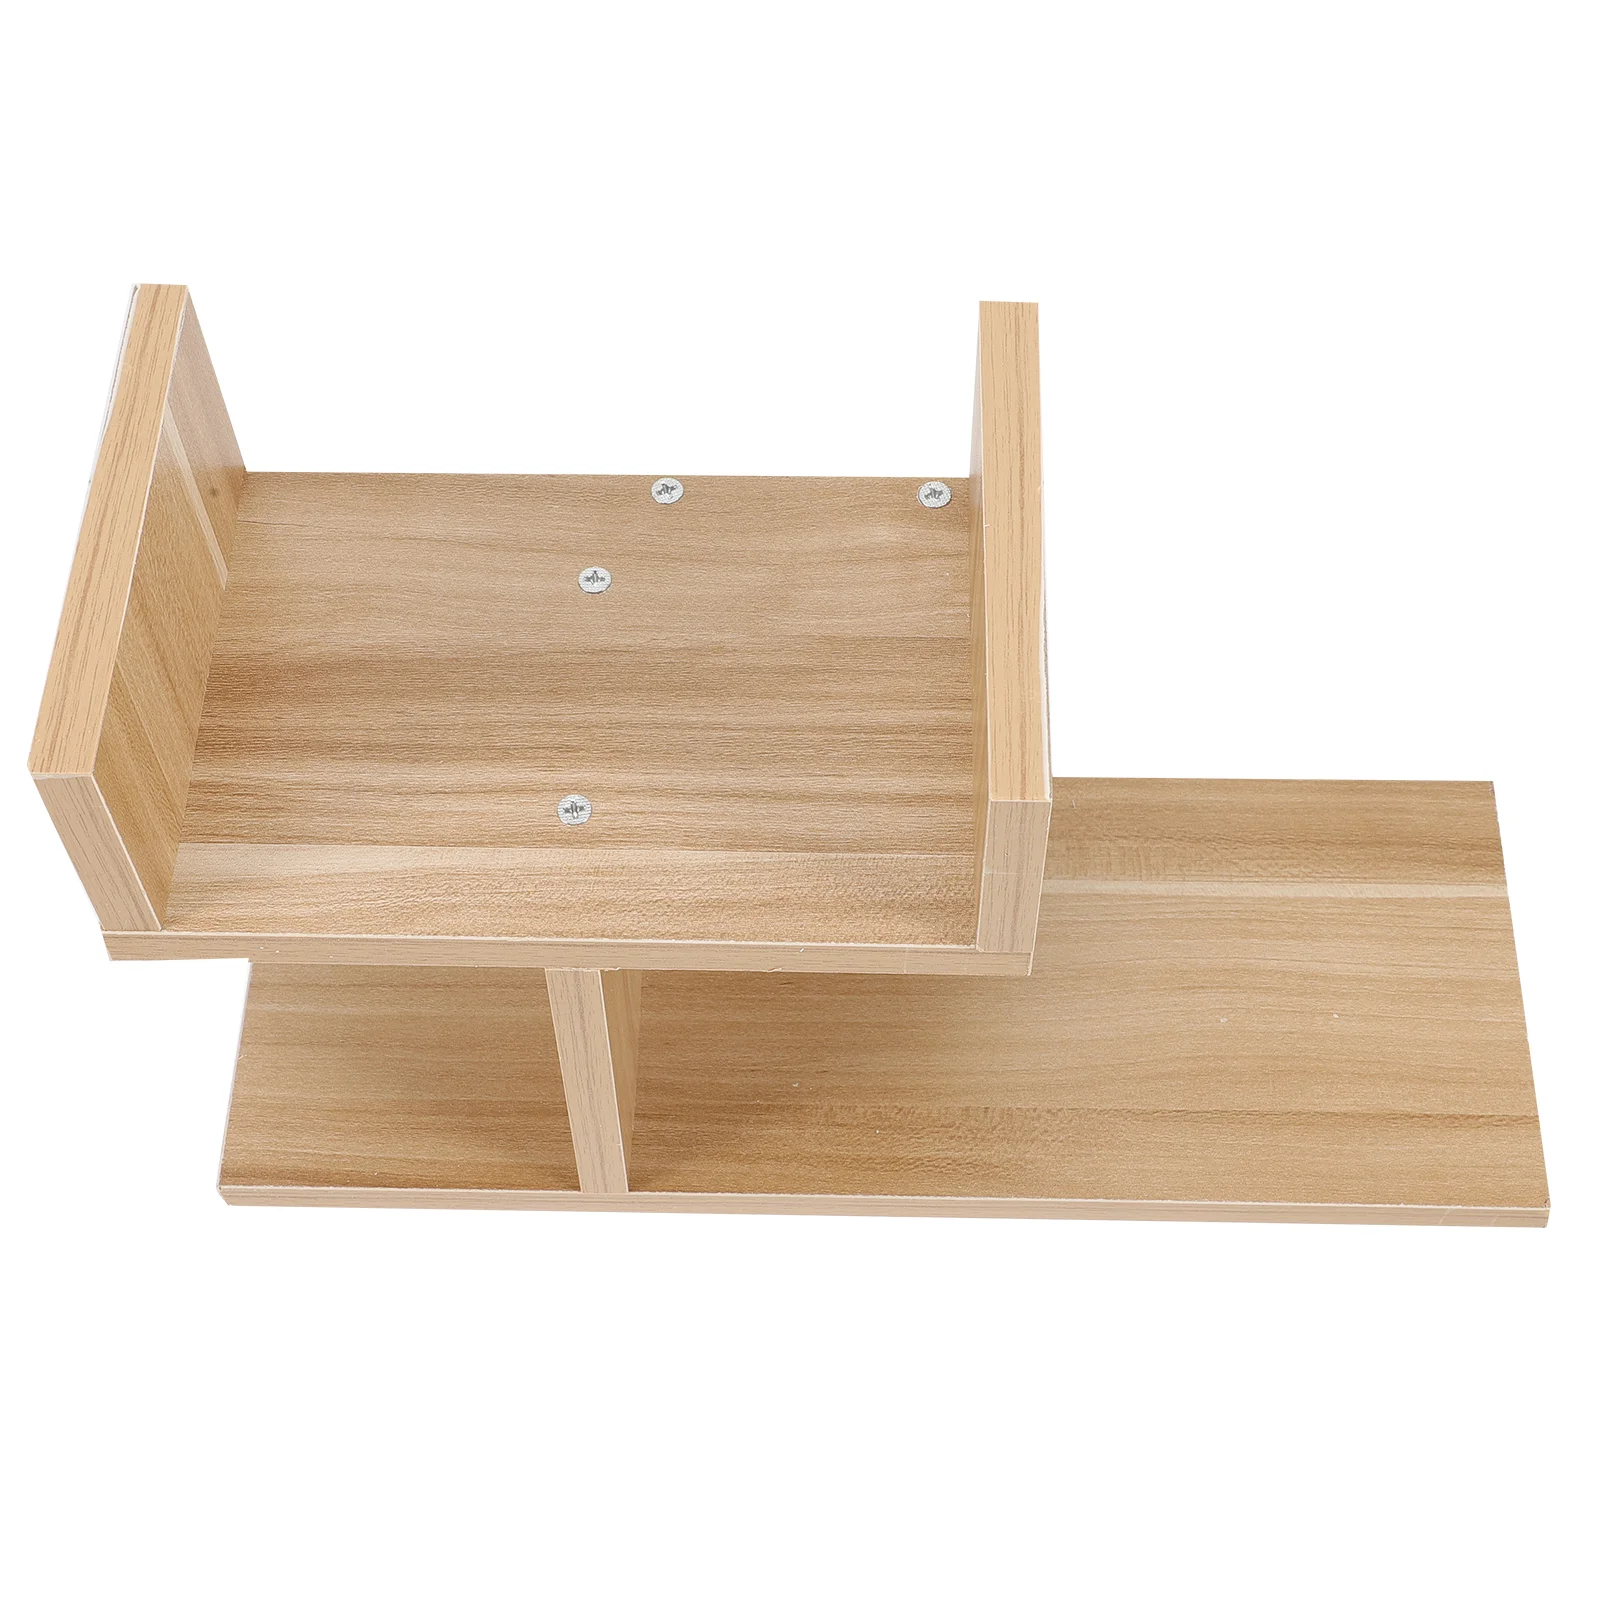 

Shelf Rack Storage Desk Wooden Organizer Stand Display Bathroom Bookshelf Holder Wood Desktop Tray Countertop Book Kitchen